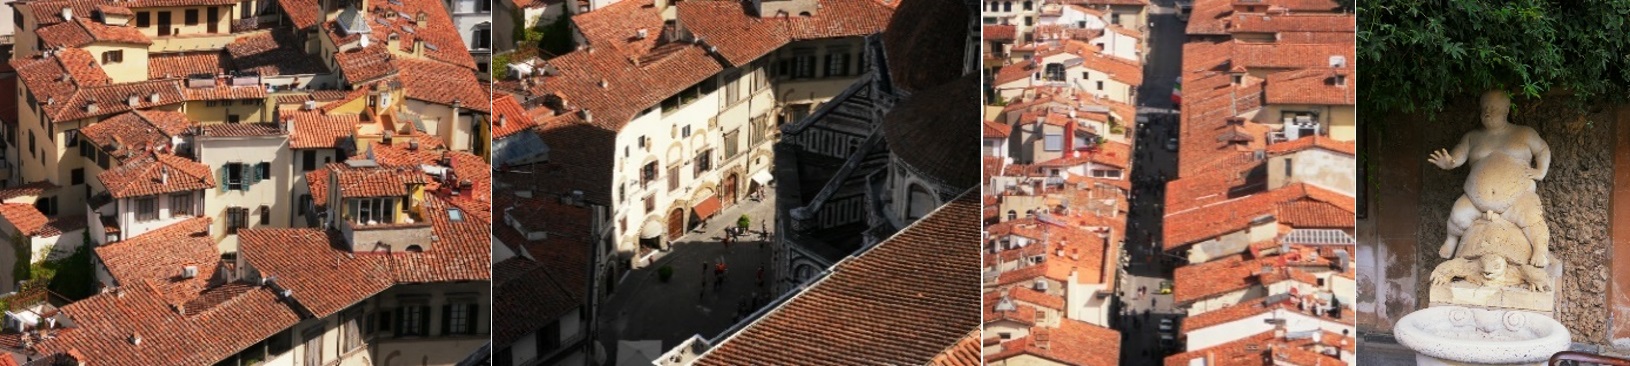 Florenz – Dächer und Straßen